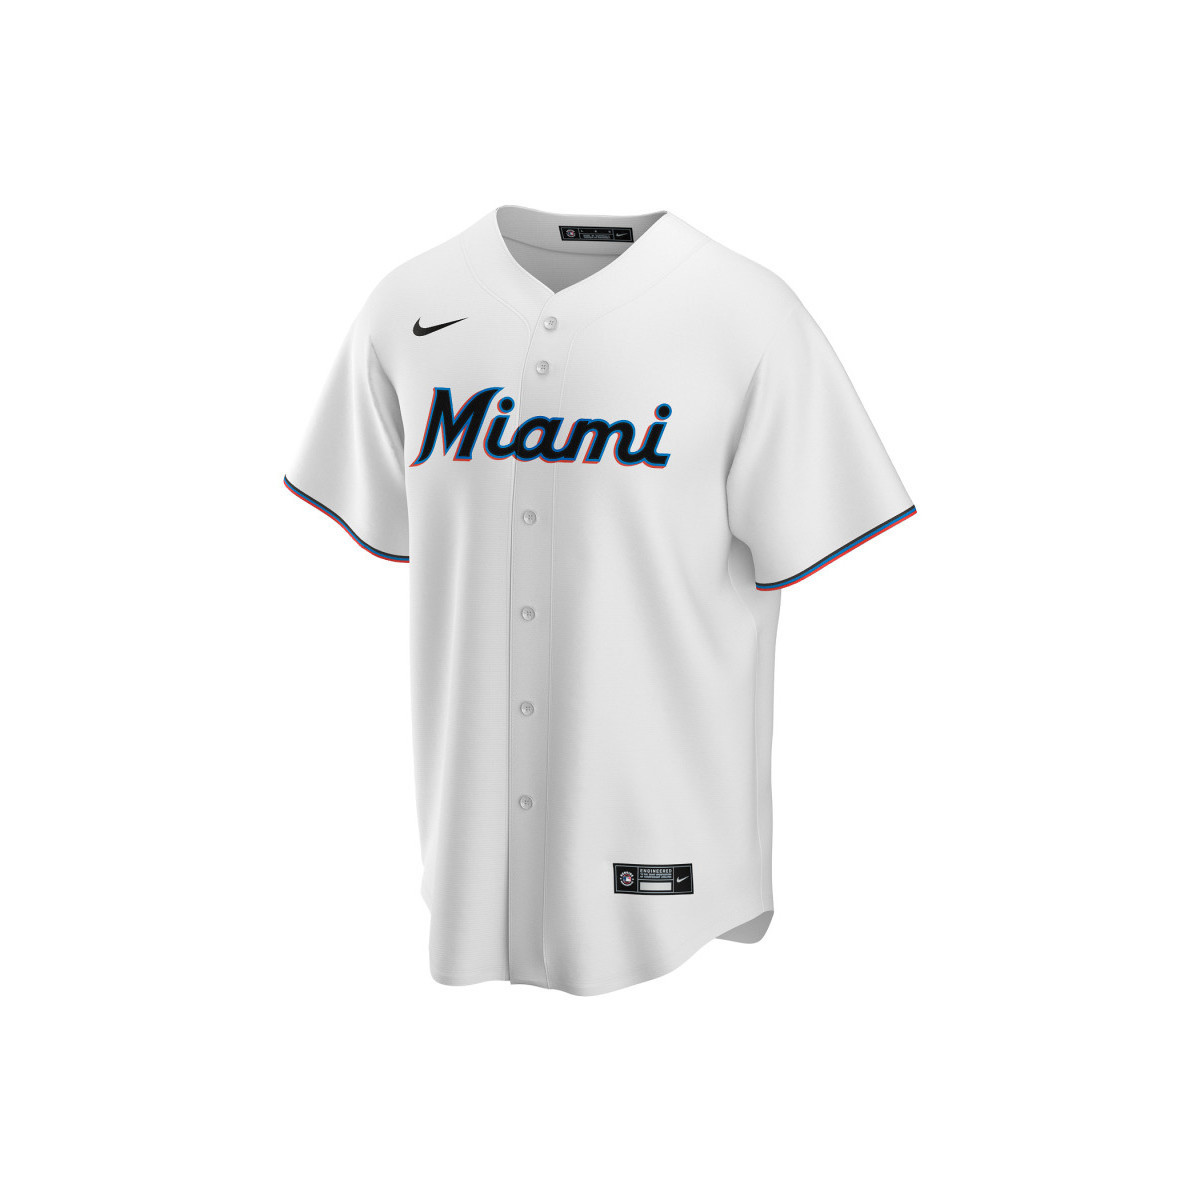 Nike Multicolore Maillot de Baseball MLB Miami iD6P54v3